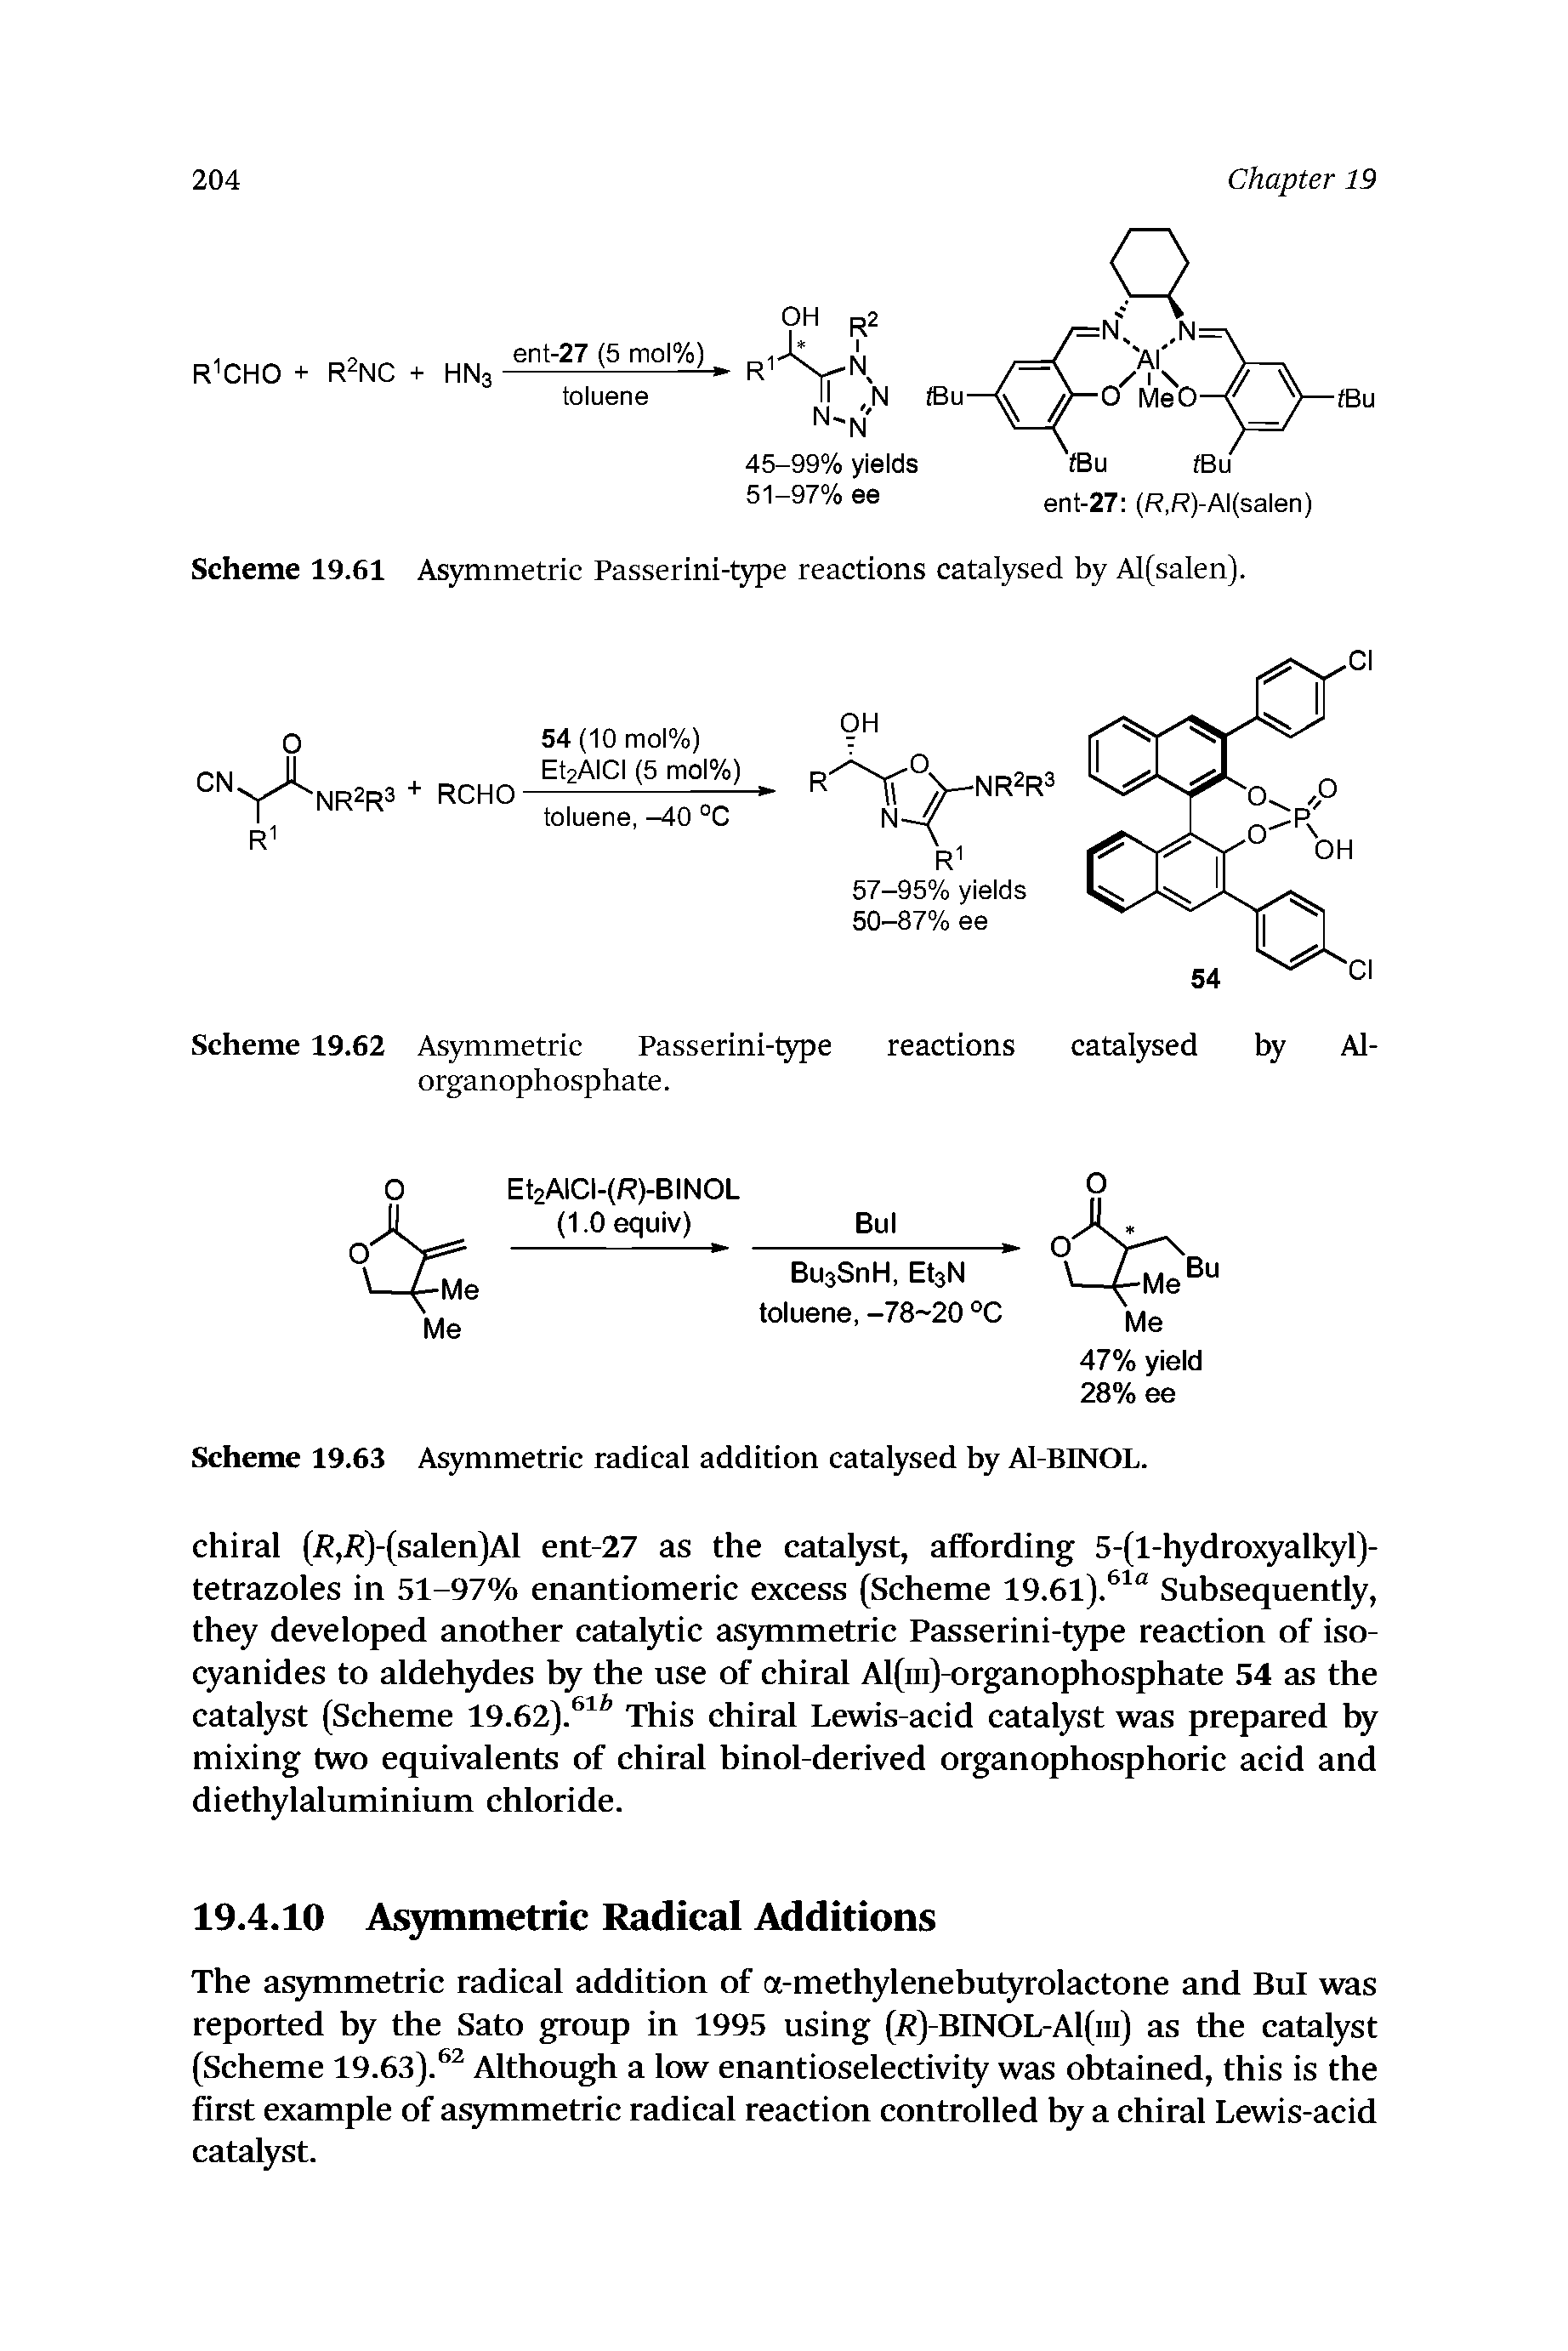 Scheme 19.63 Asymmetric radical addition catalysed by Al-BINOL.